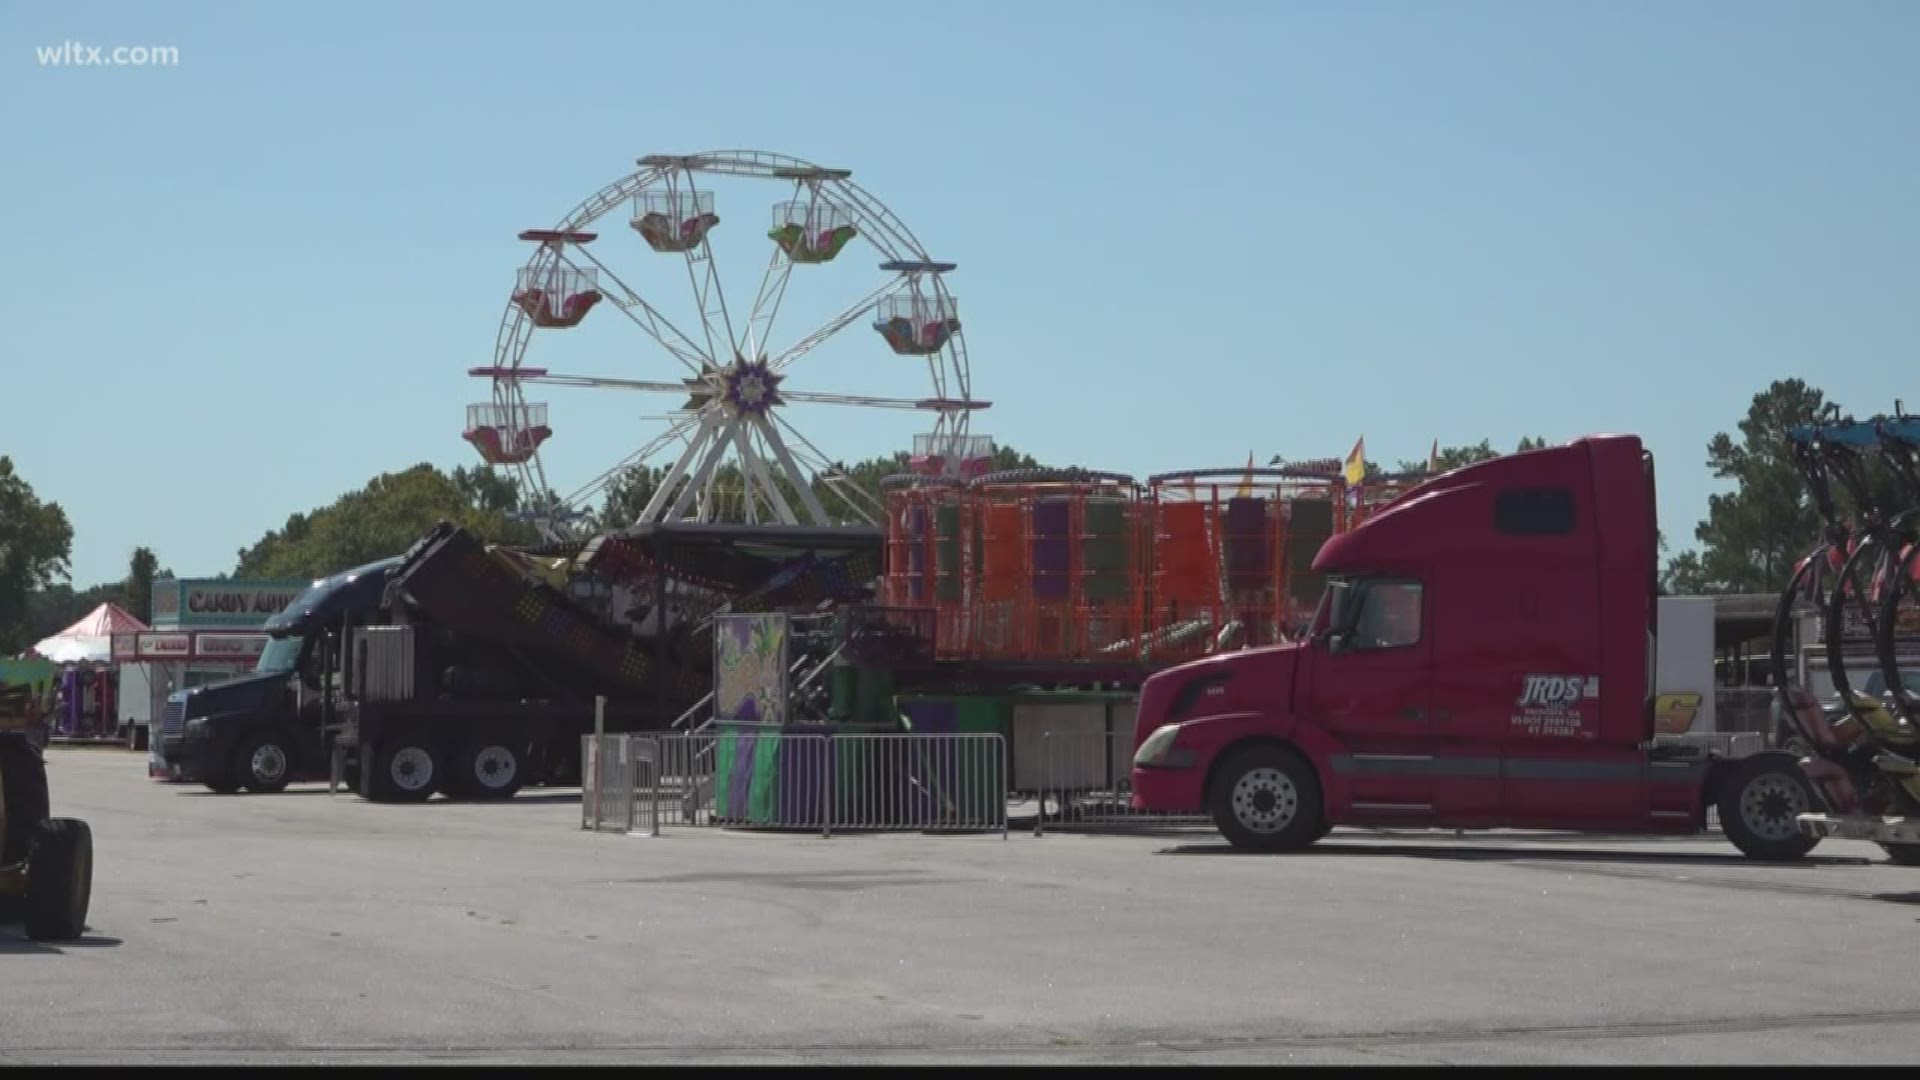 Sumter County fair gets underway this week